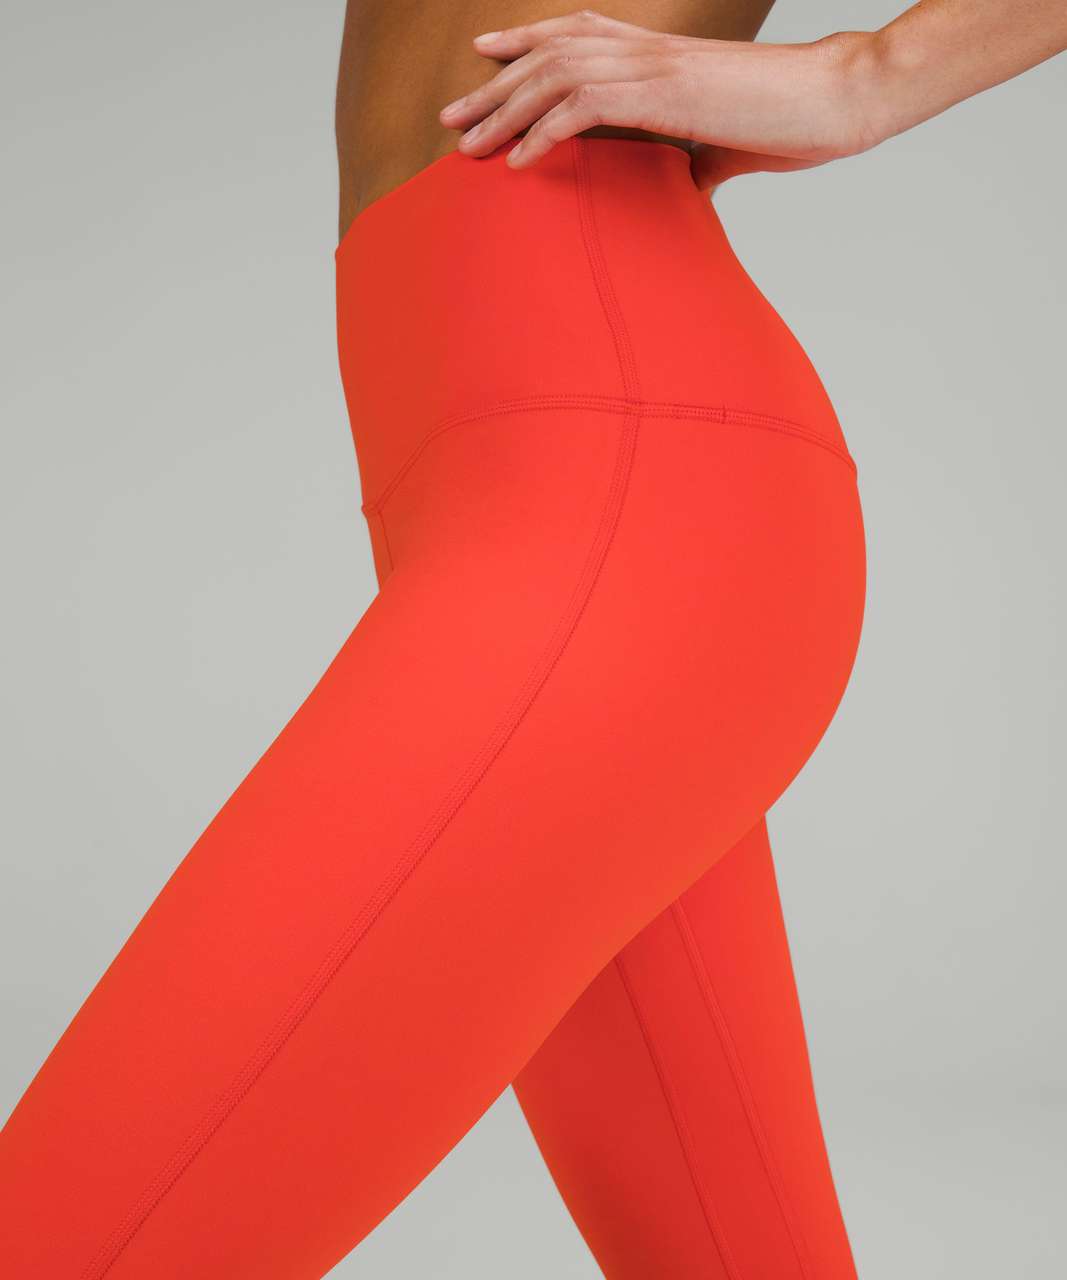 Lululemon Cropped Legging Orange Size 4 - $30 (74% Off Retail